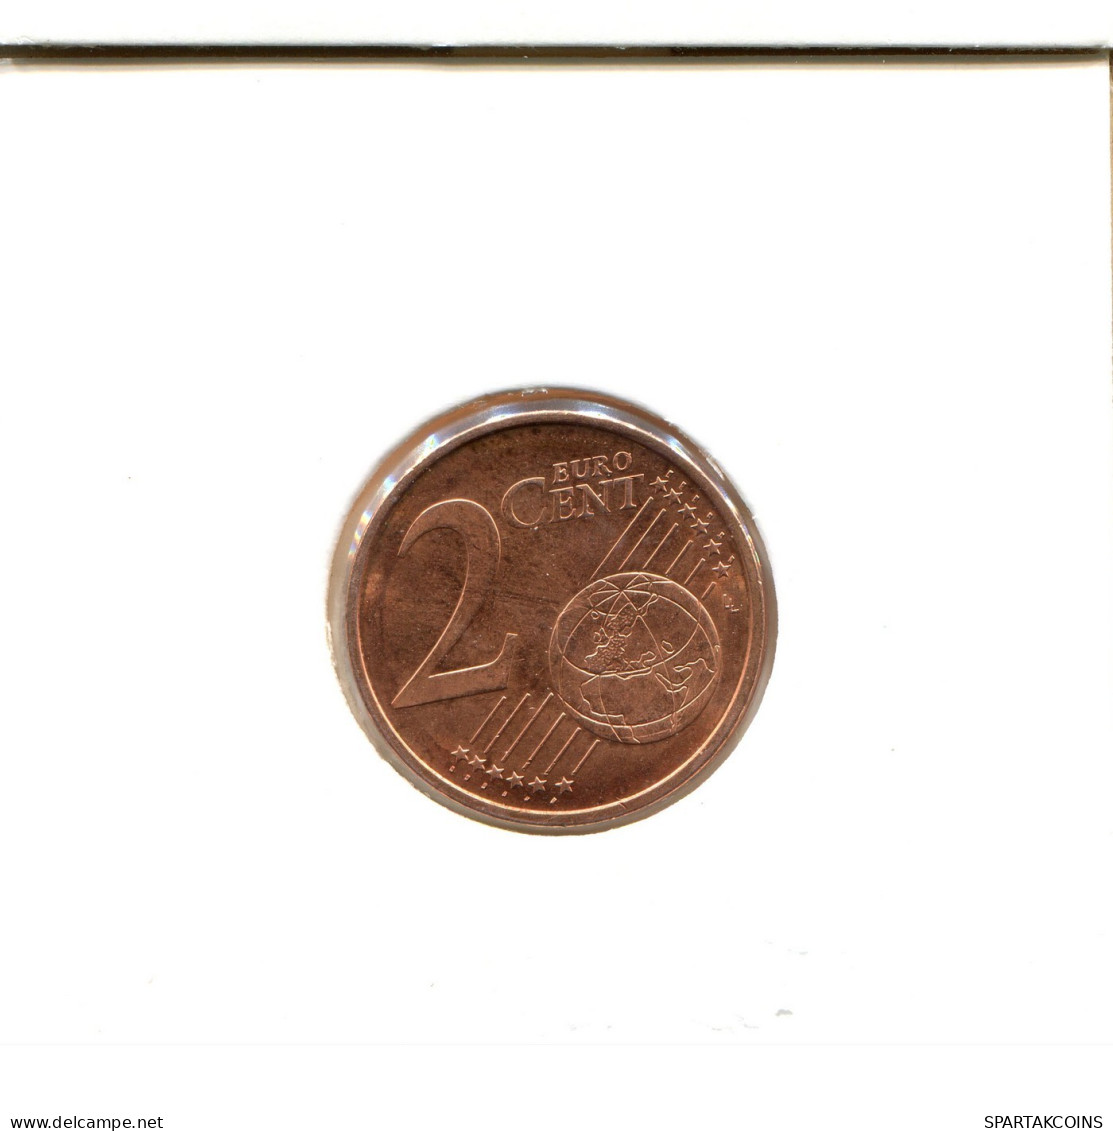 2 EURO CENTS 2013 FINLAND Coin #EU084.U.A - Finlandía